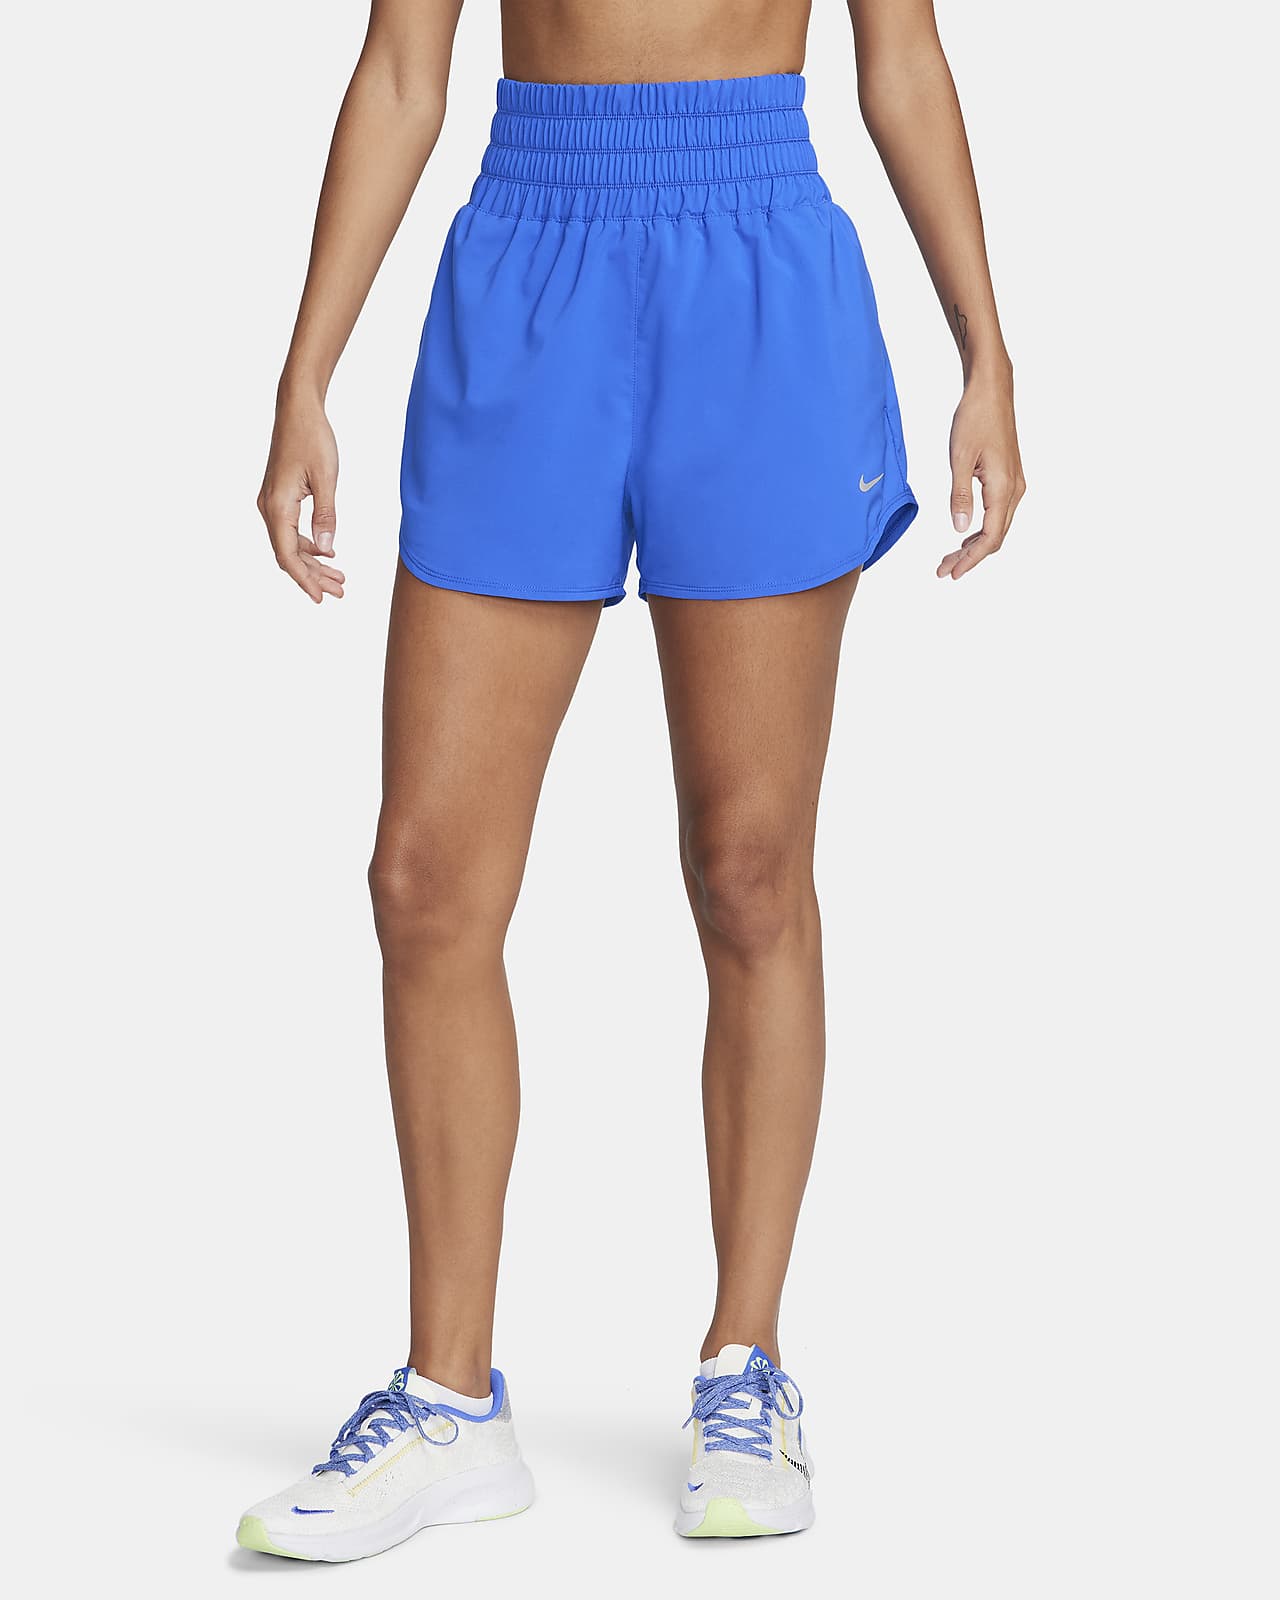 Nike One Pantalón corto de talle ultraalto con malla interior de 8 cm Dri-FIT - Mujer